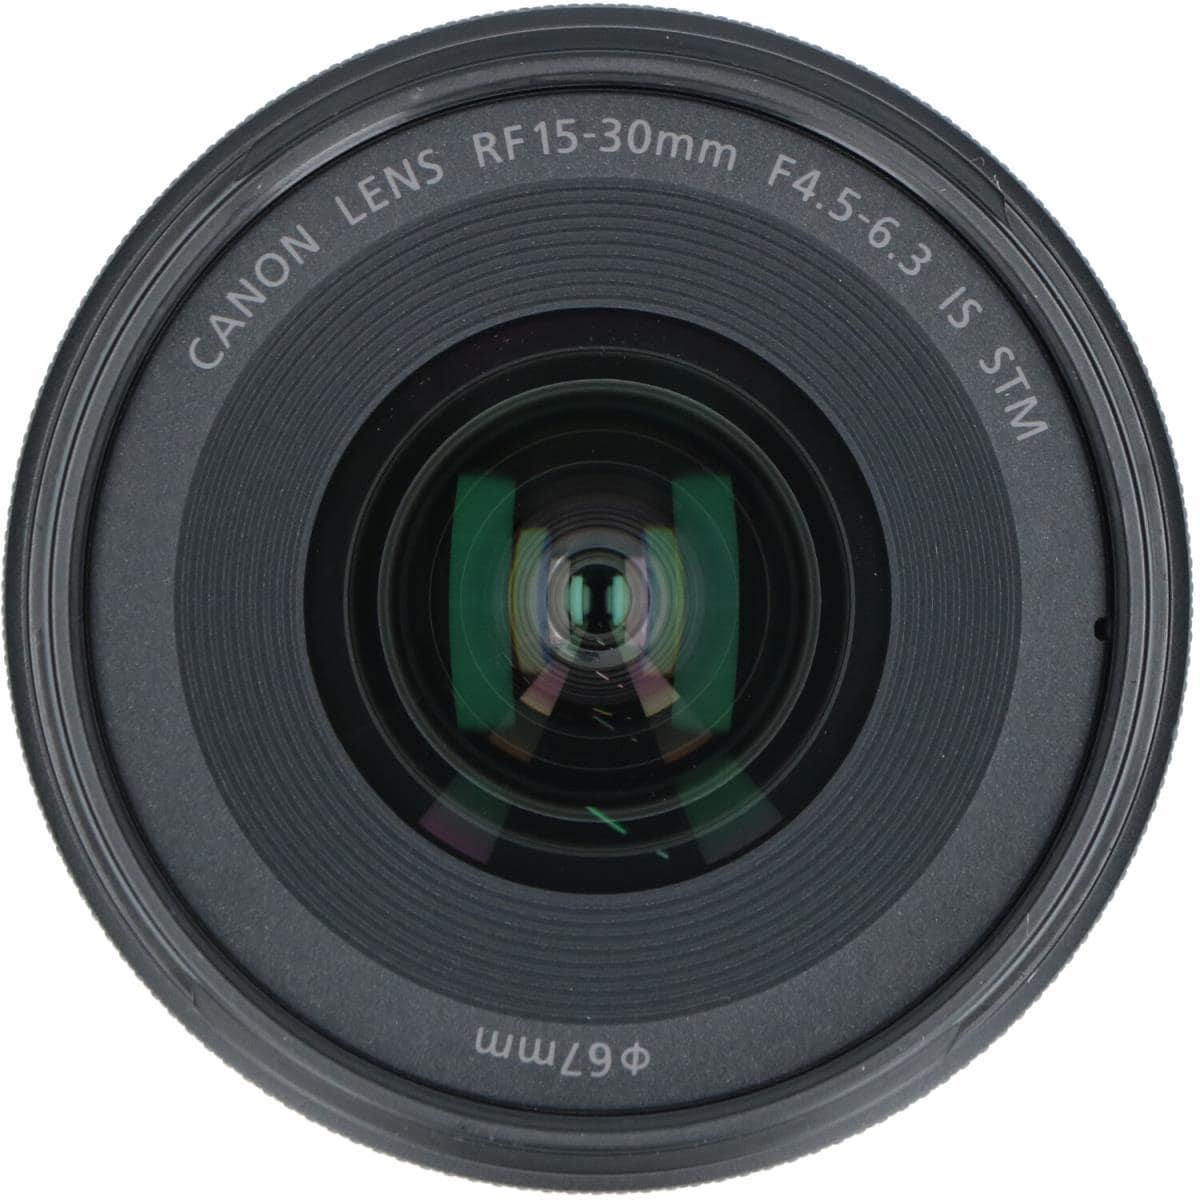 Canon RF15-30mm F4.5-6.3はSTMレンズ。 :20230511000034-00667